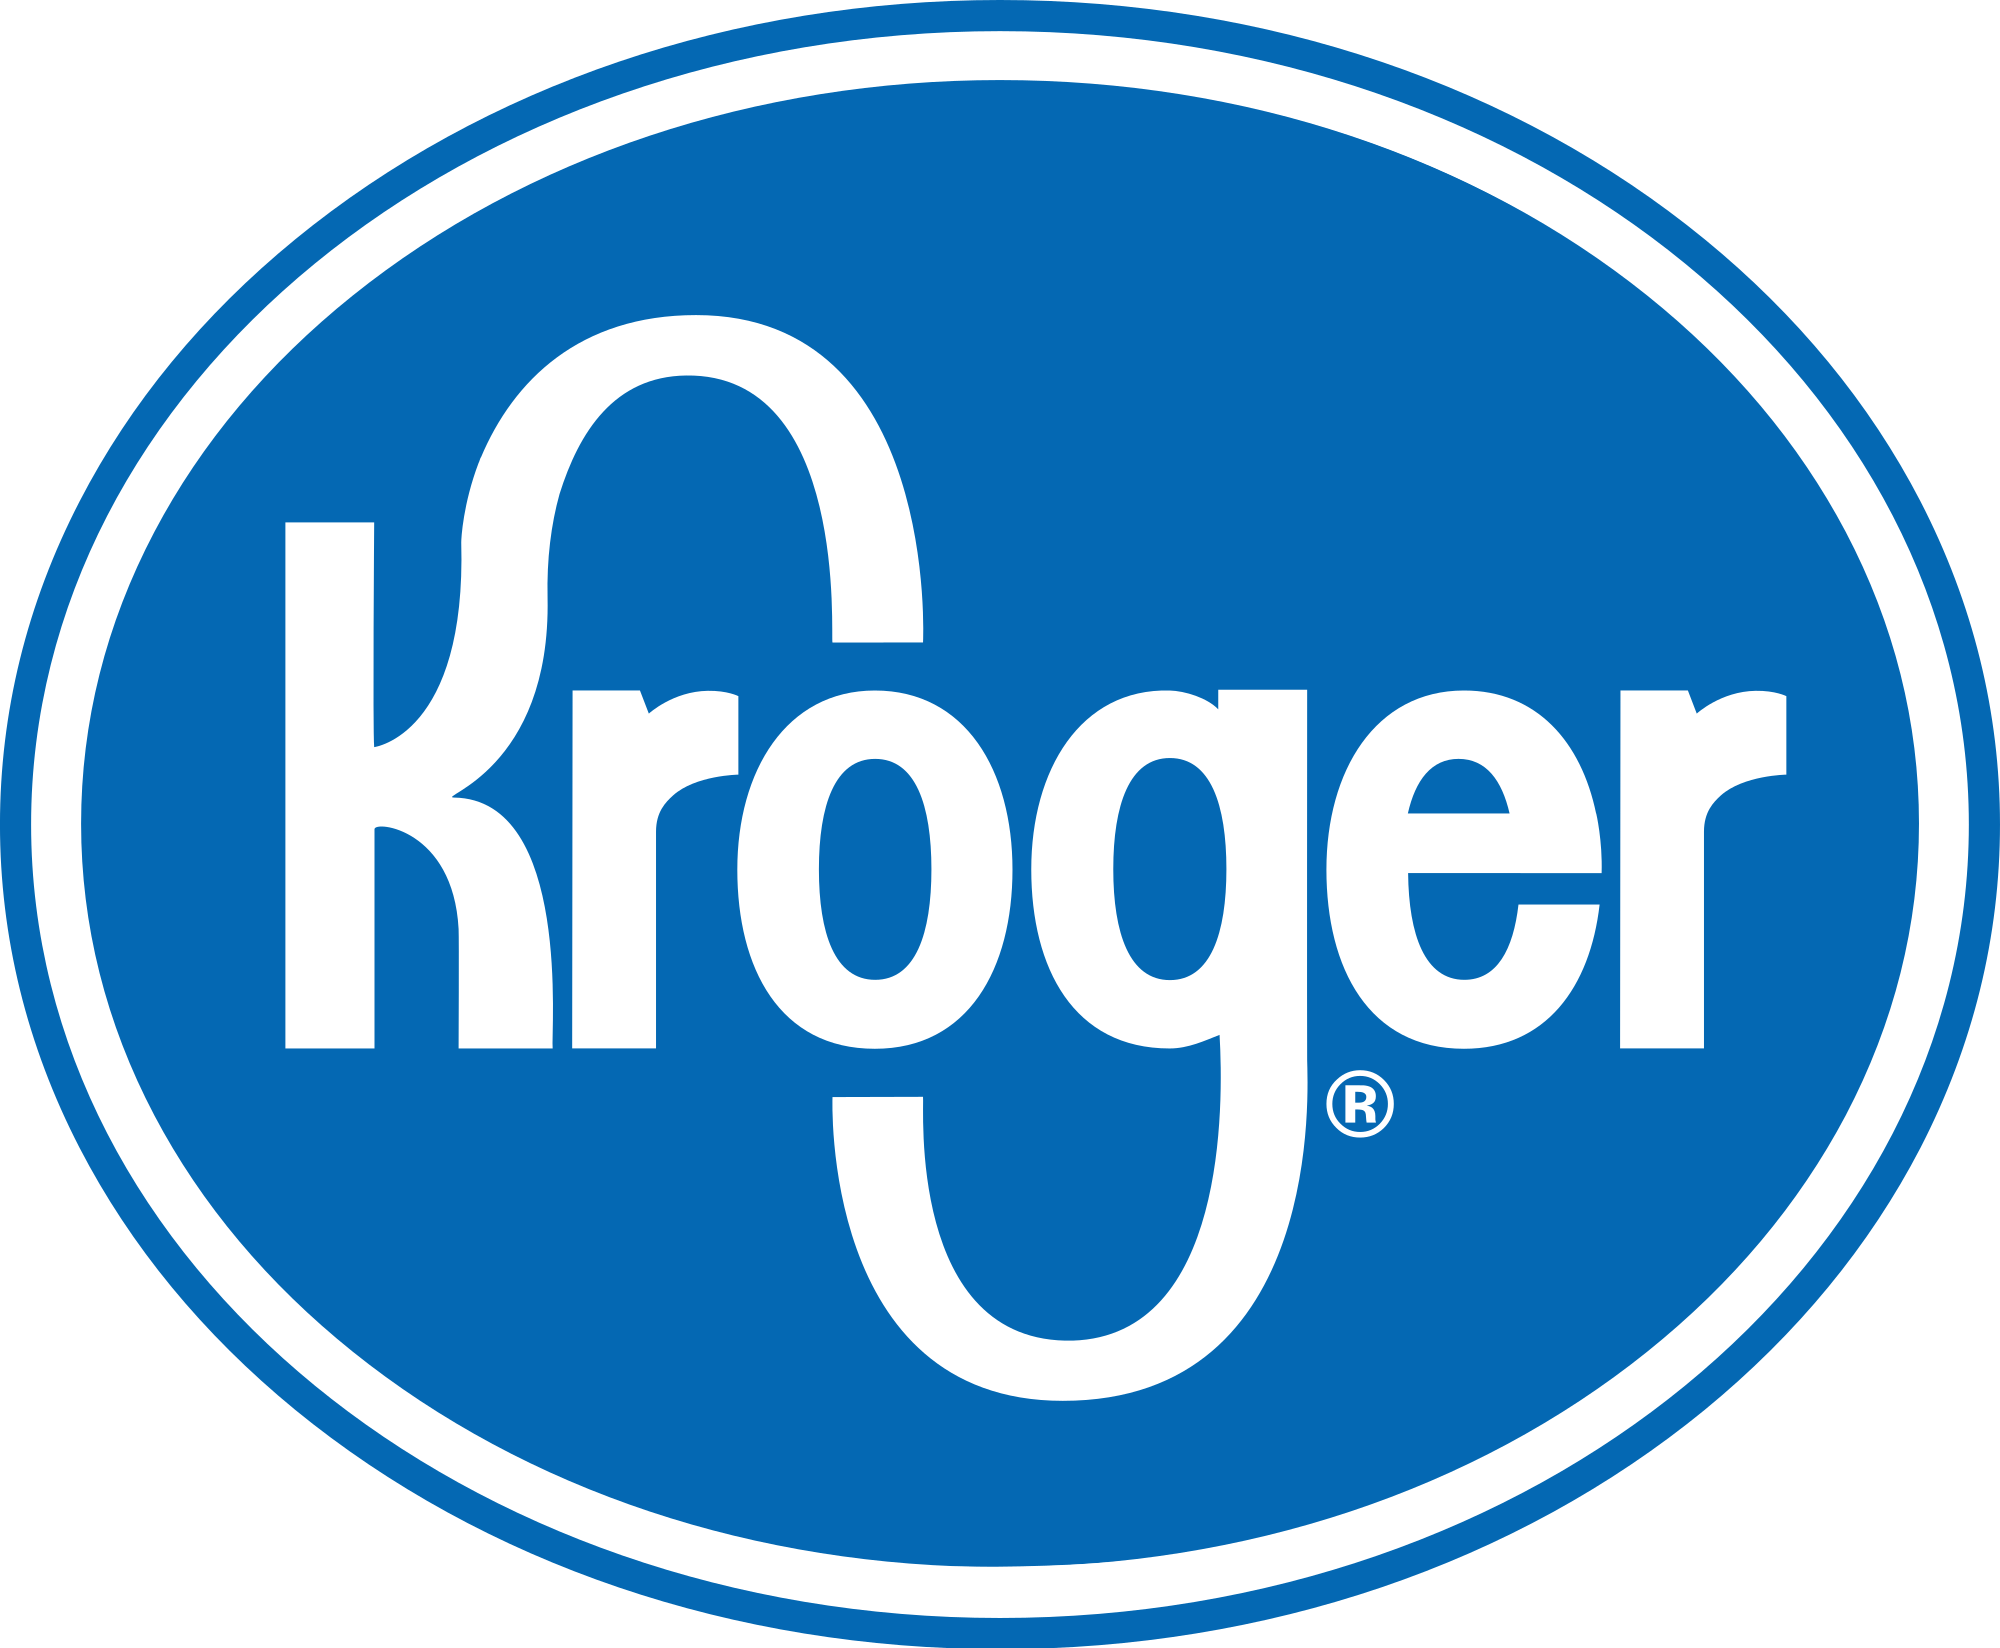 Kroger Logo PNG